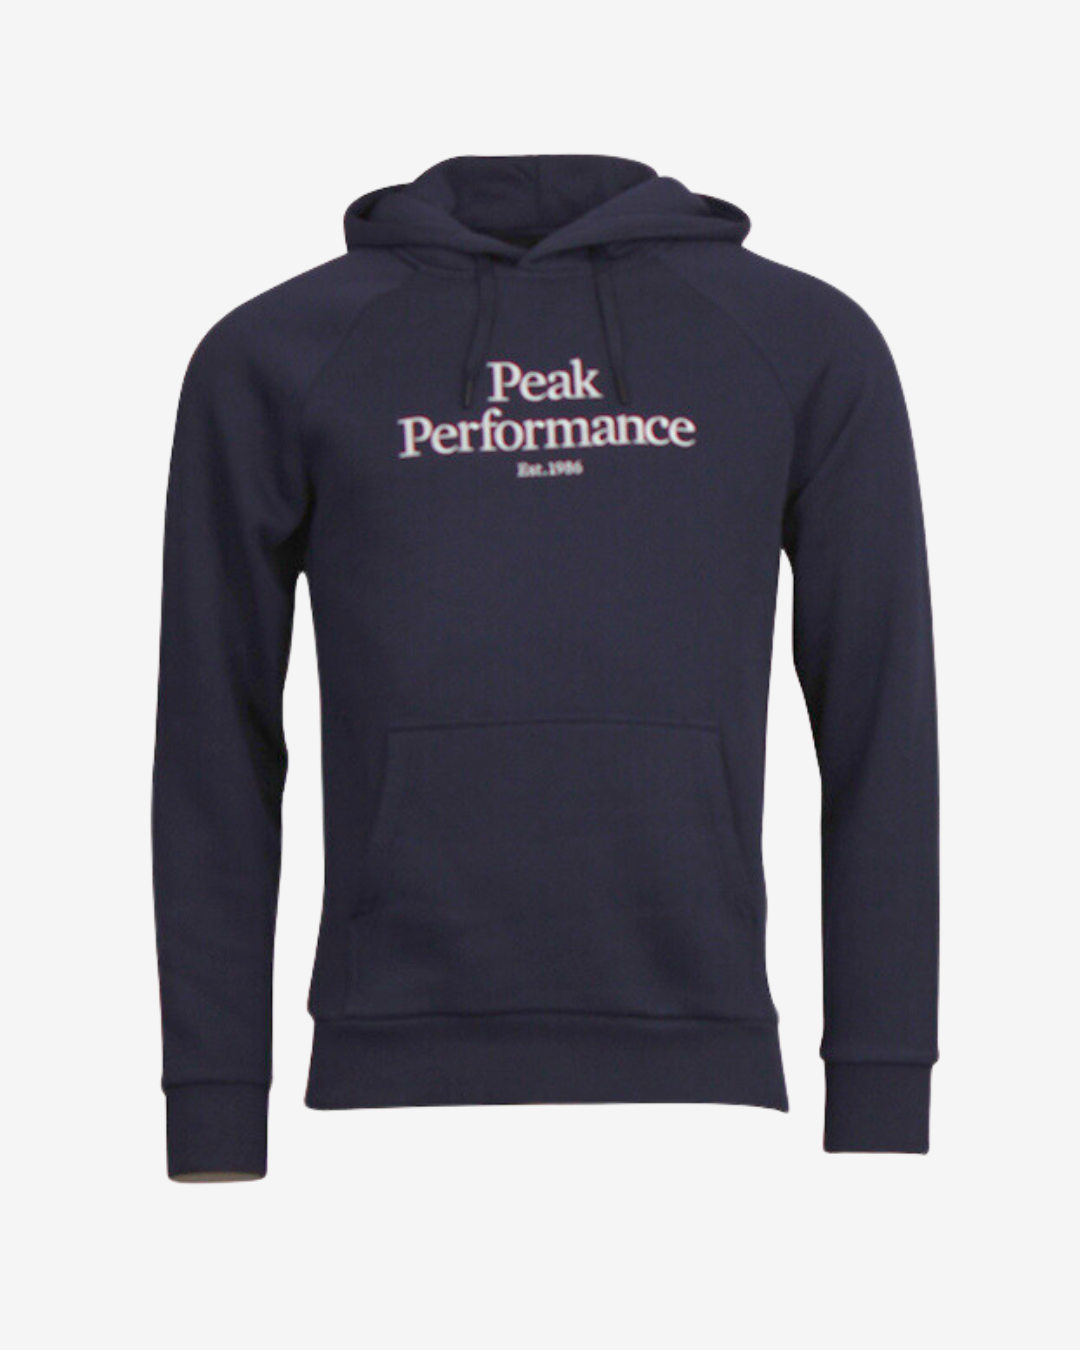 Se Peak Performance Original logo hættetrøje - Navy - Str. M - Modish.dk hos Modish.dk